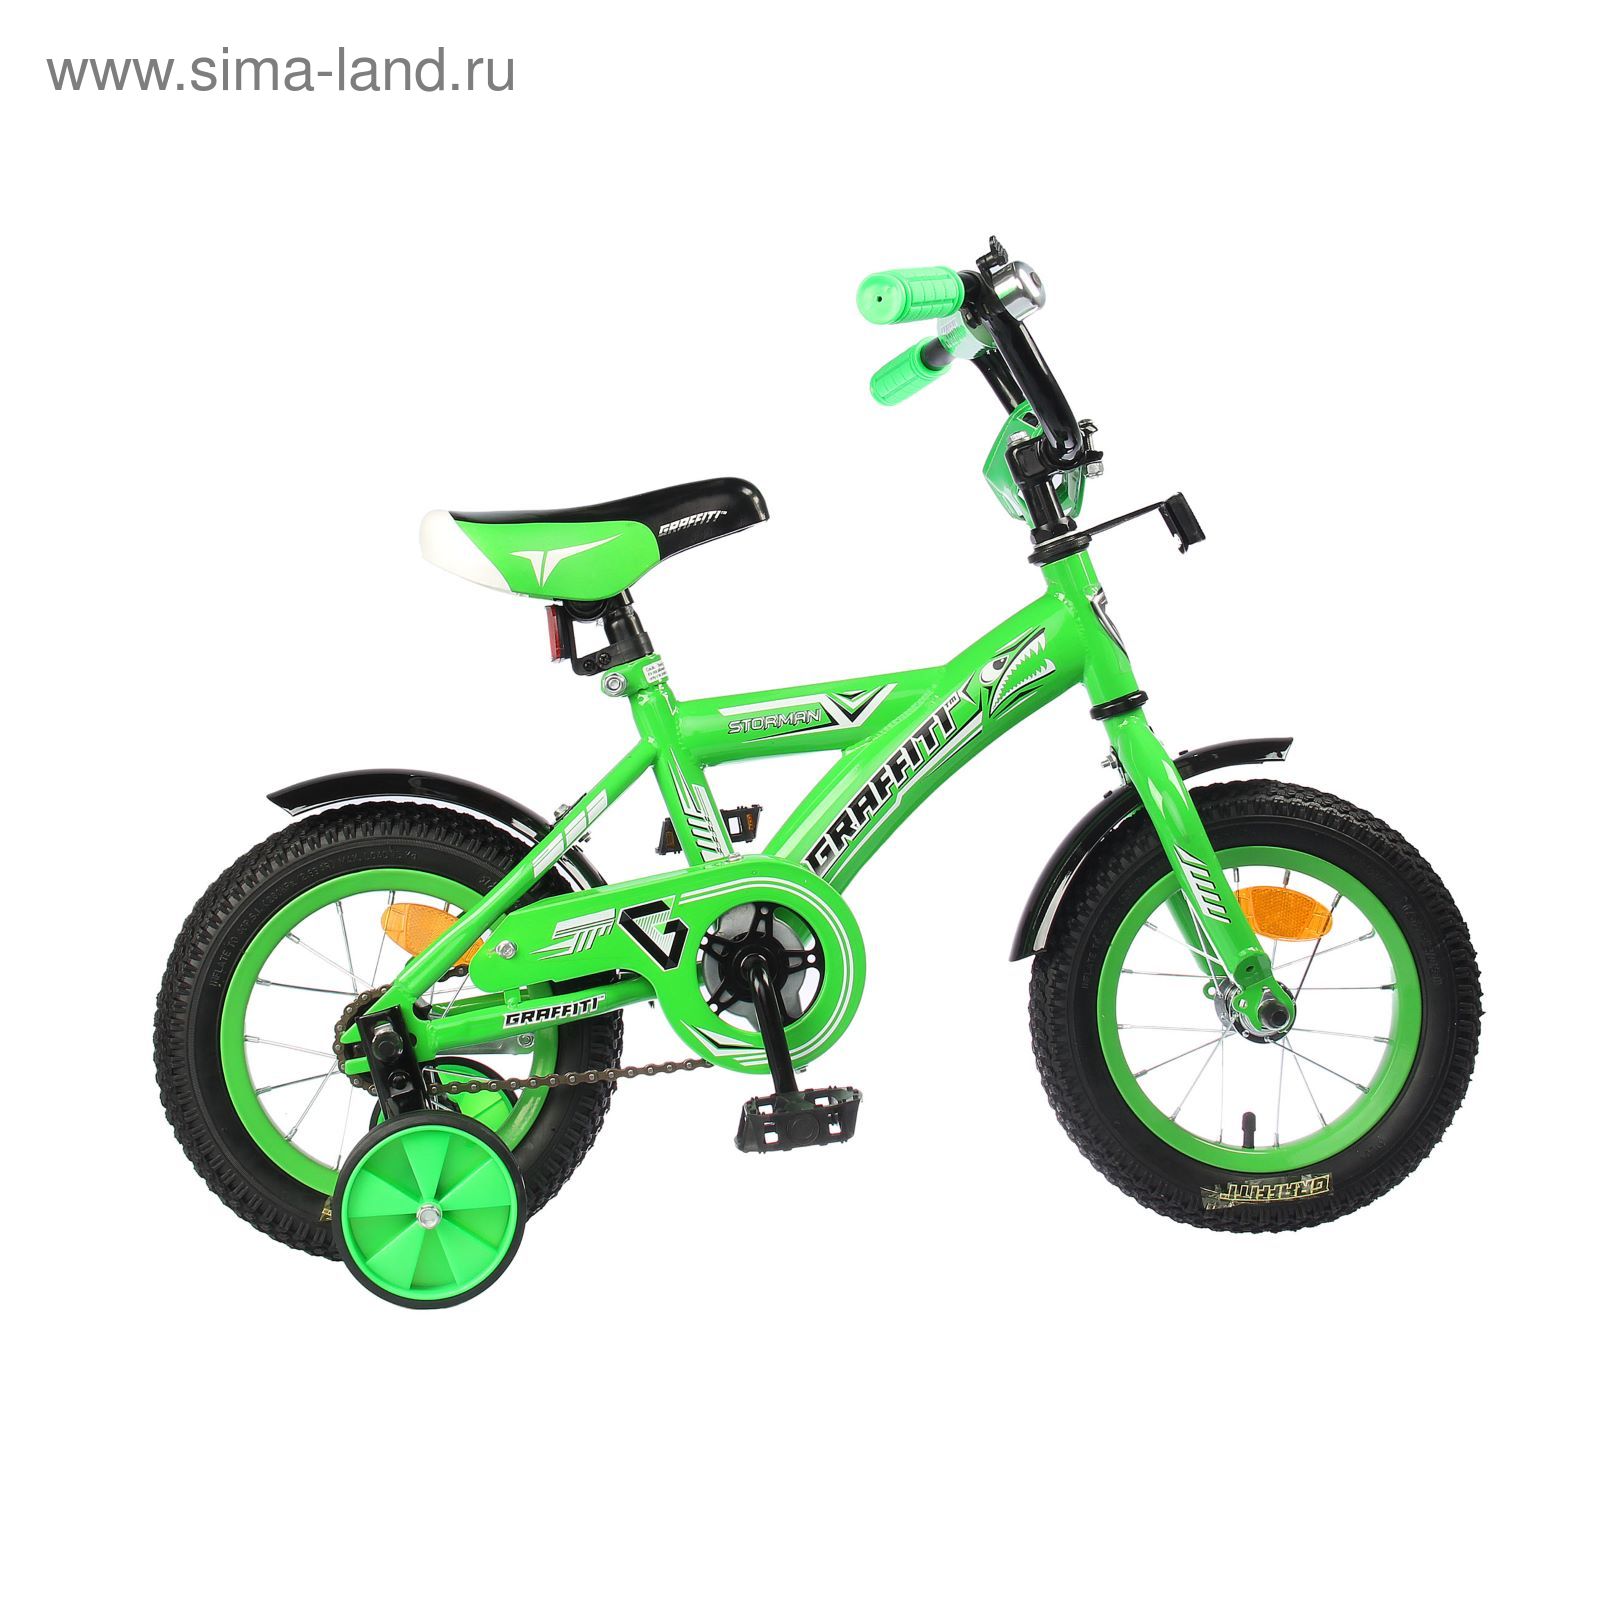 Велосипед 12" GRAFFITI Storman RUS, 2017, цвет зелёный